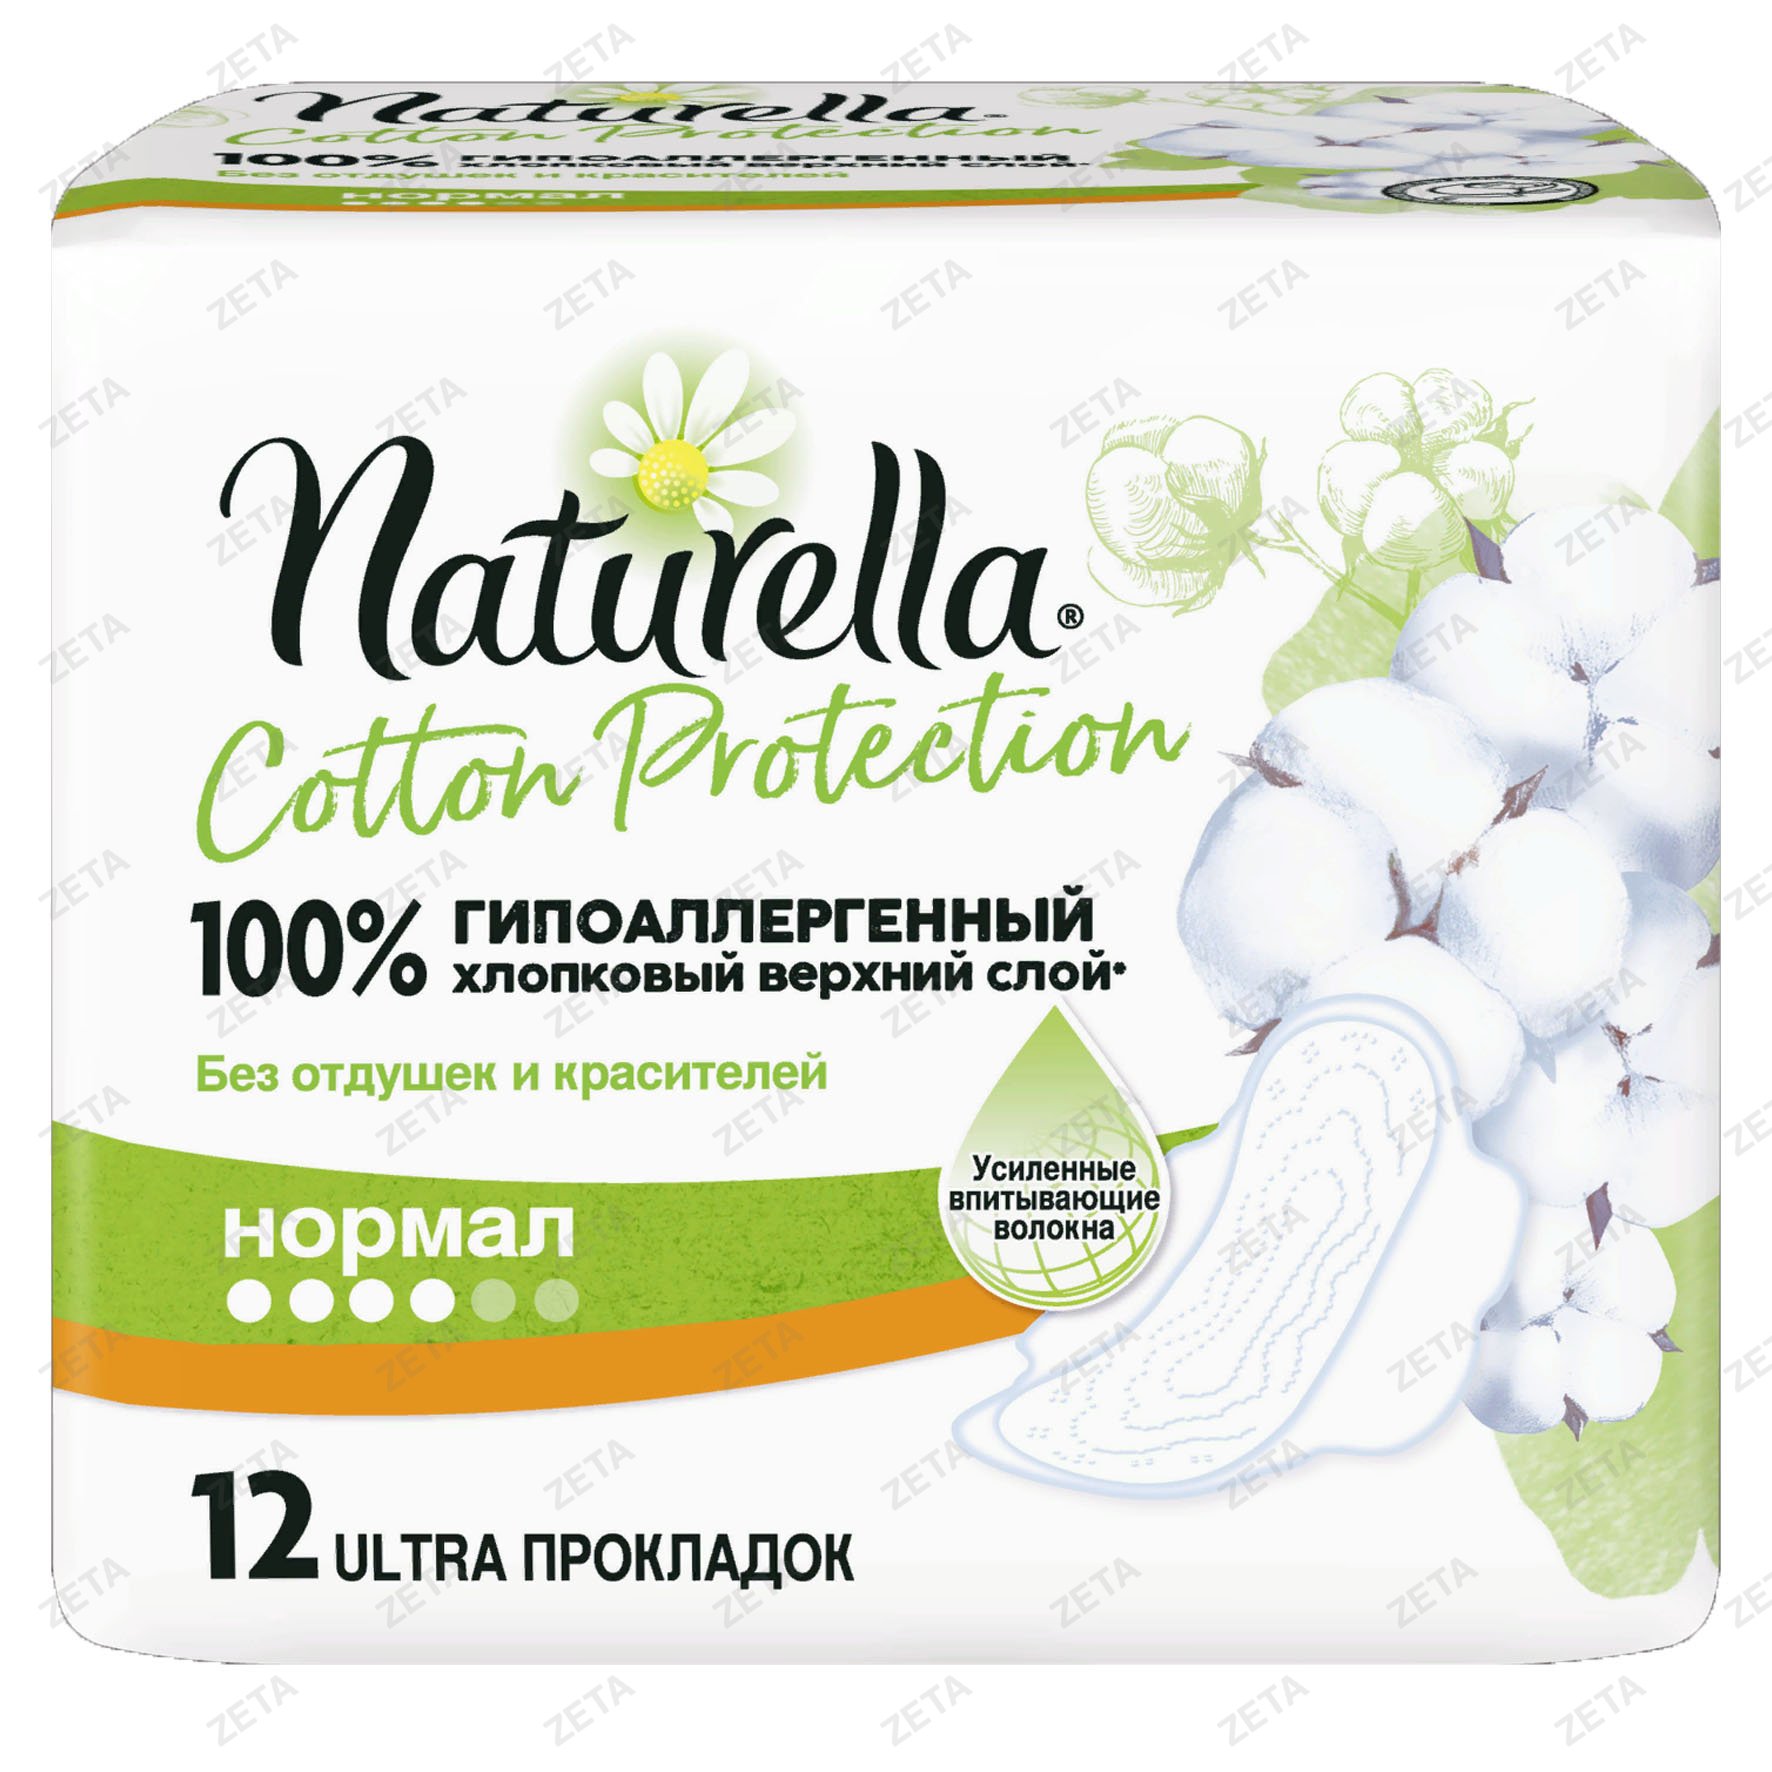 Женские гигиенические прокладки "Naturella Cotton Protection" ( Normal Single) 12 шт.